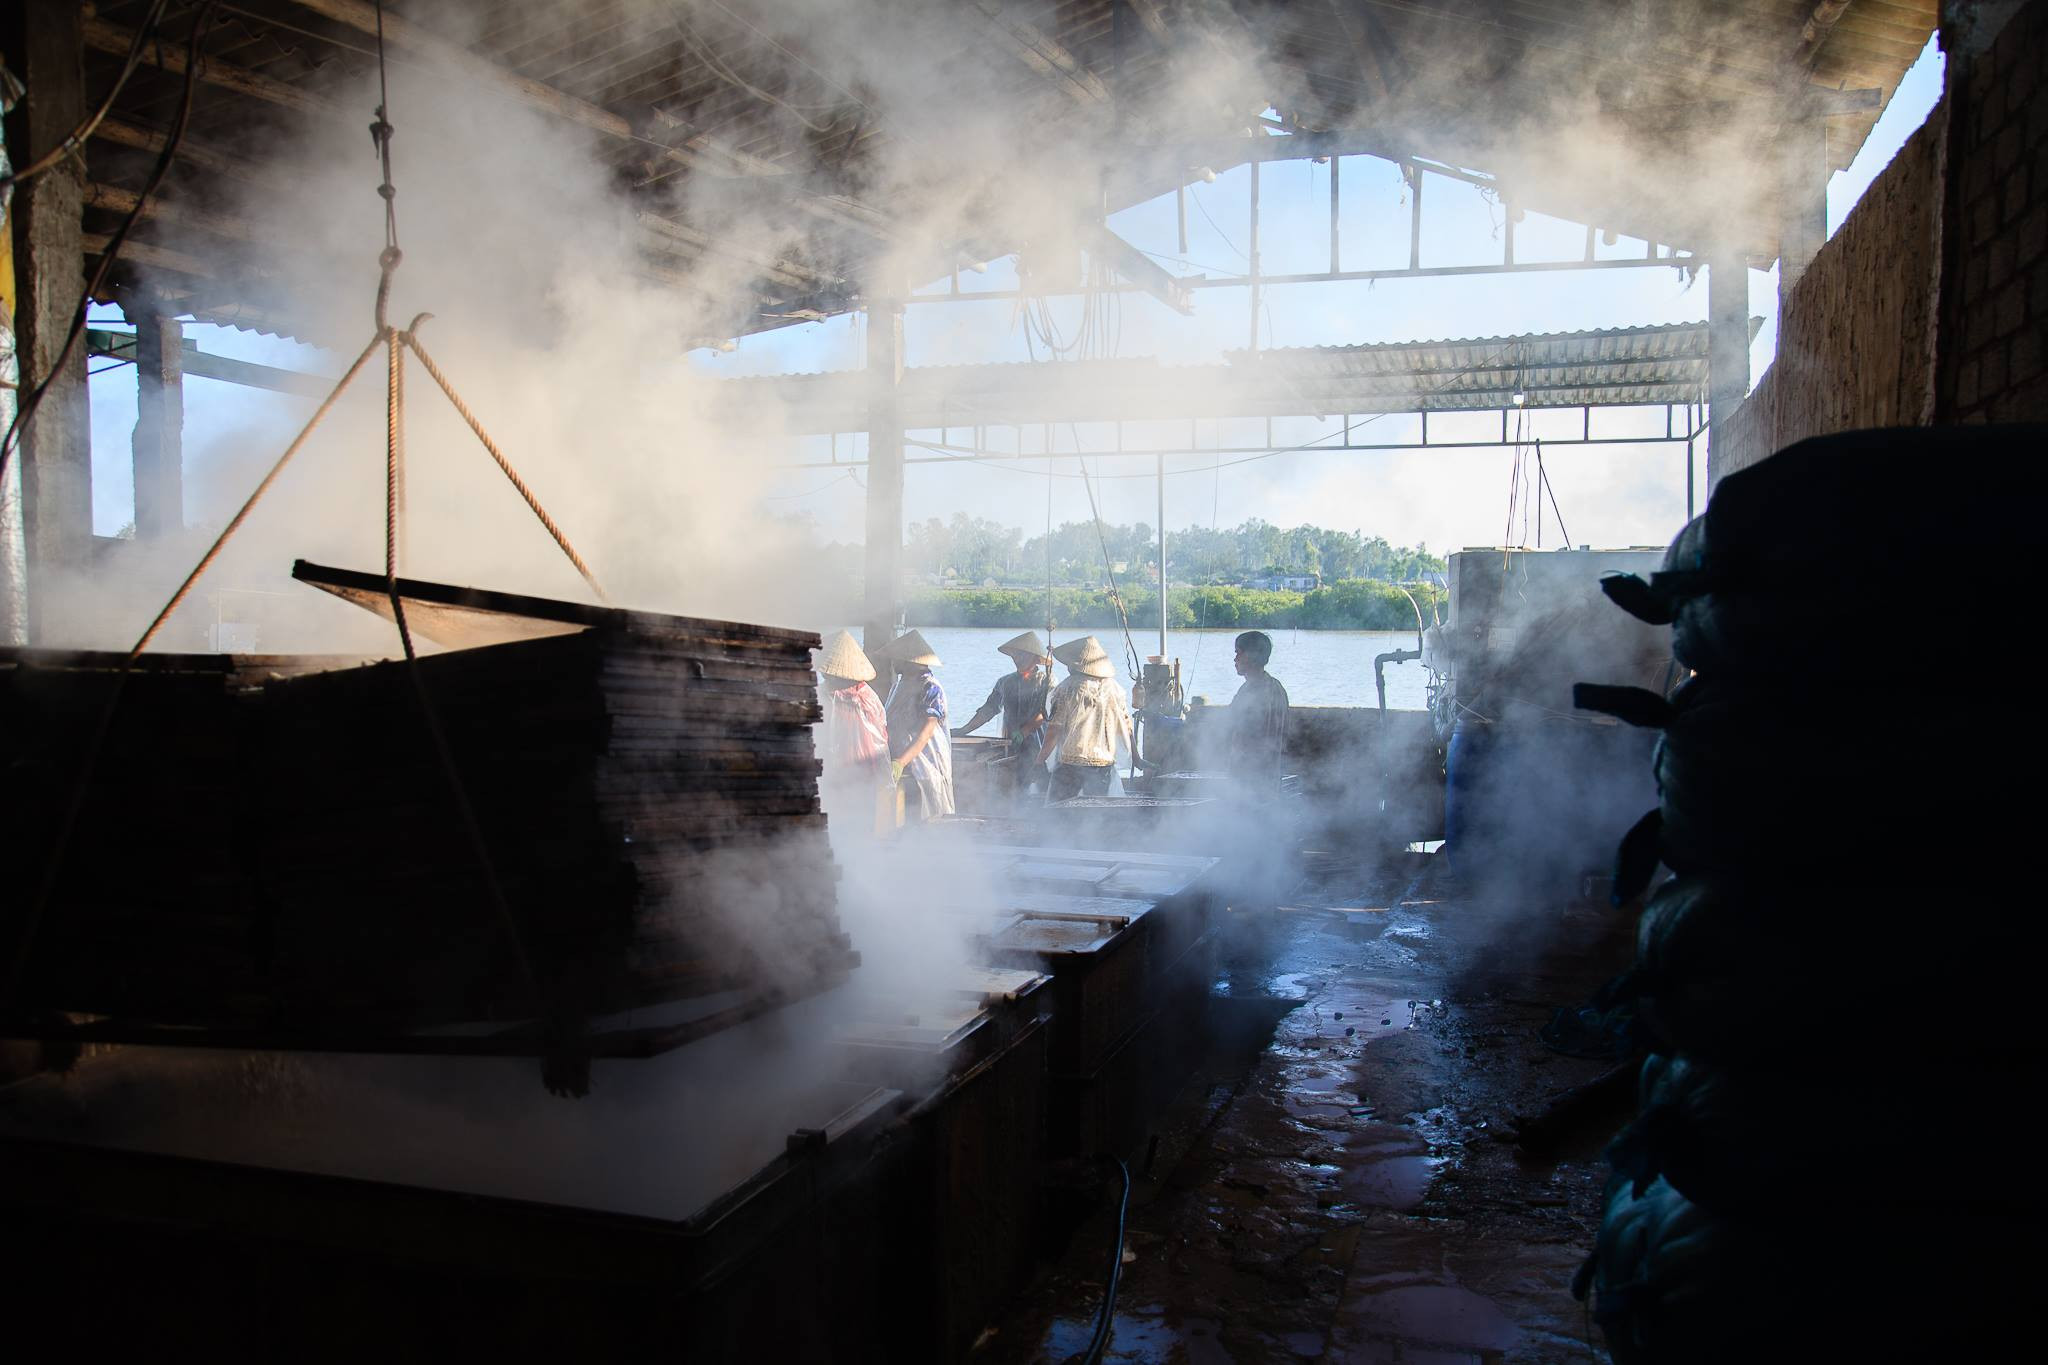 Ở Quỳnh Phương (Hoàng Mai) hiện có khoảng 7 lò hấp cá, lao động chủ yếu là người trong vùng làm thời vụ, được trả công theo giờ. Ảnh: Duy Sơn 